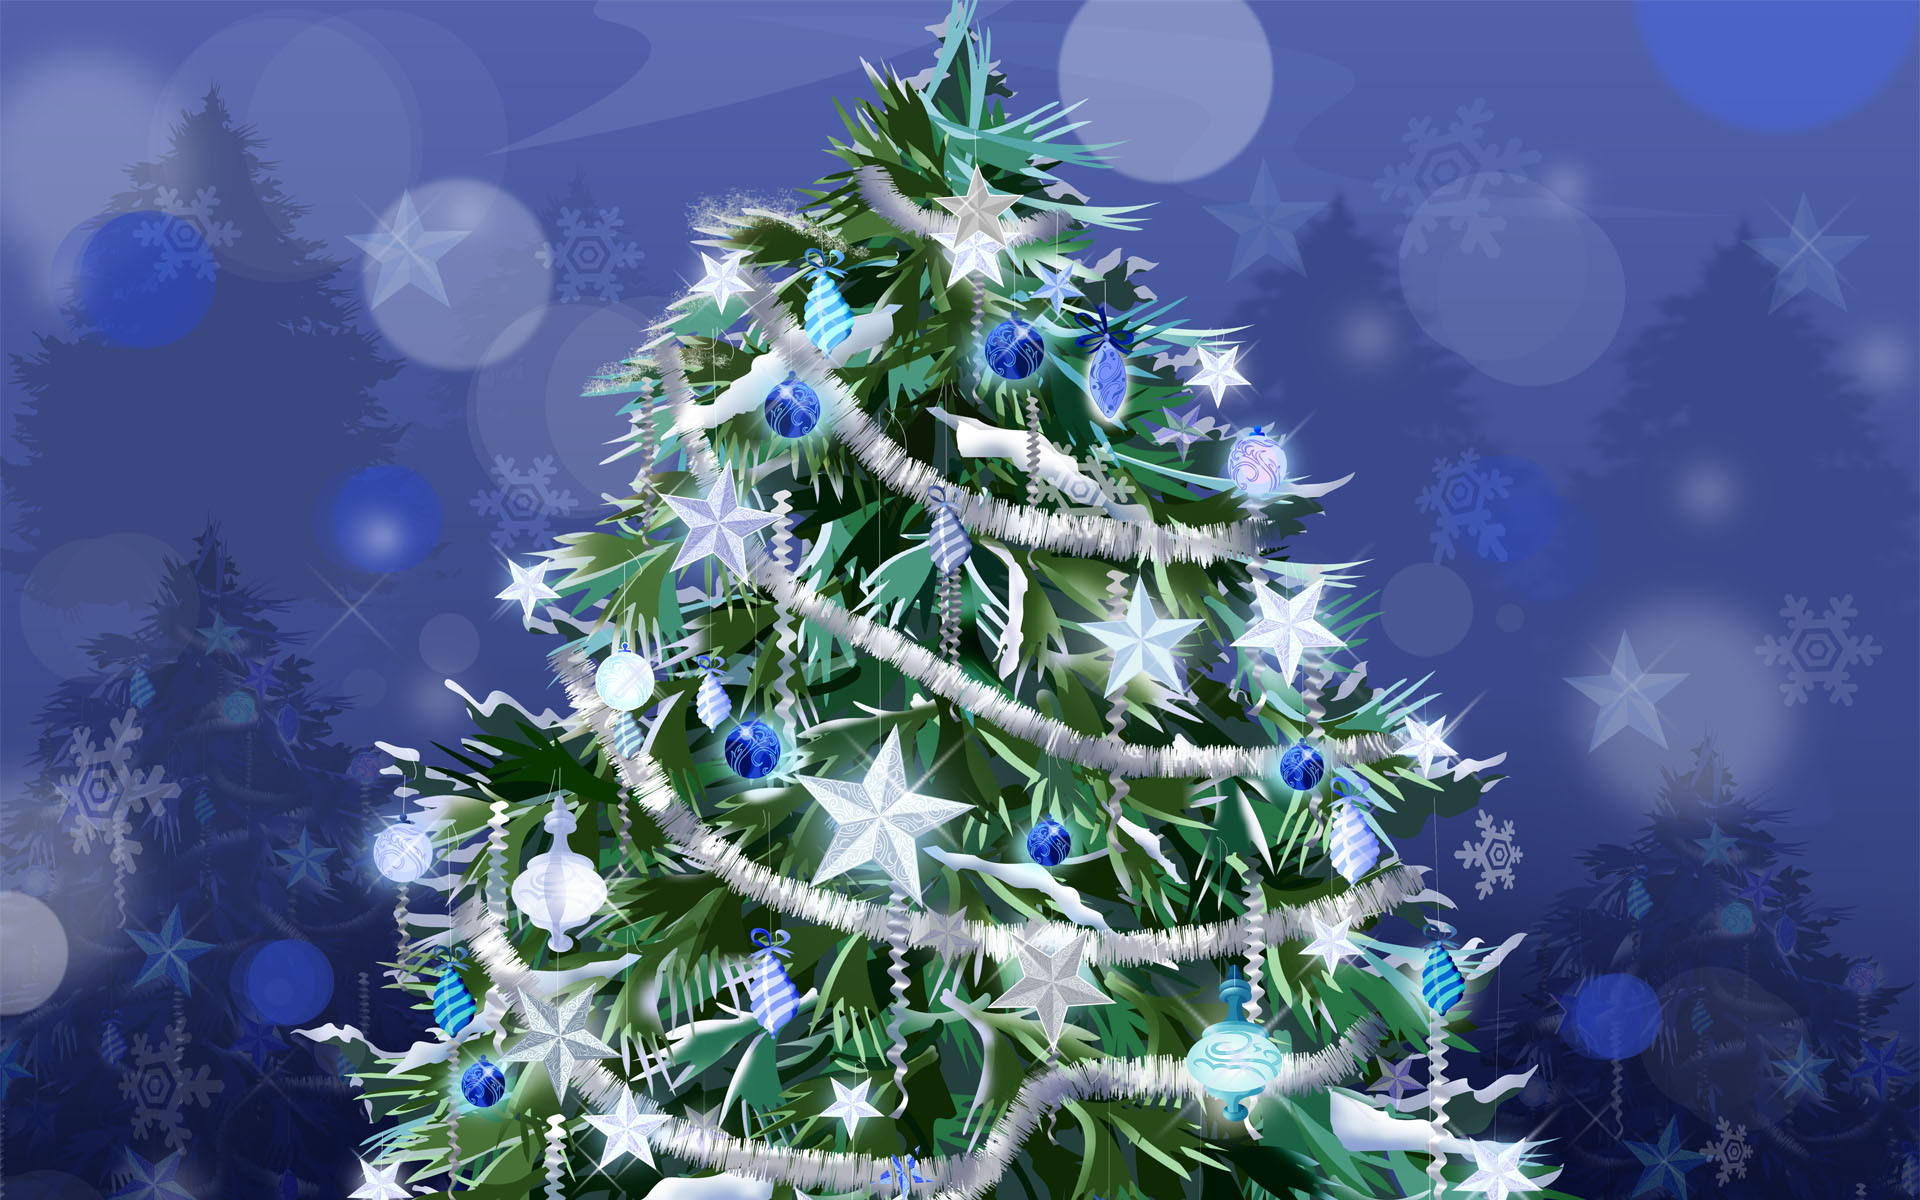 Foto Di Natale Per Desktop.Holiday Tree New Year Desktop Wallpapers 1920x1200